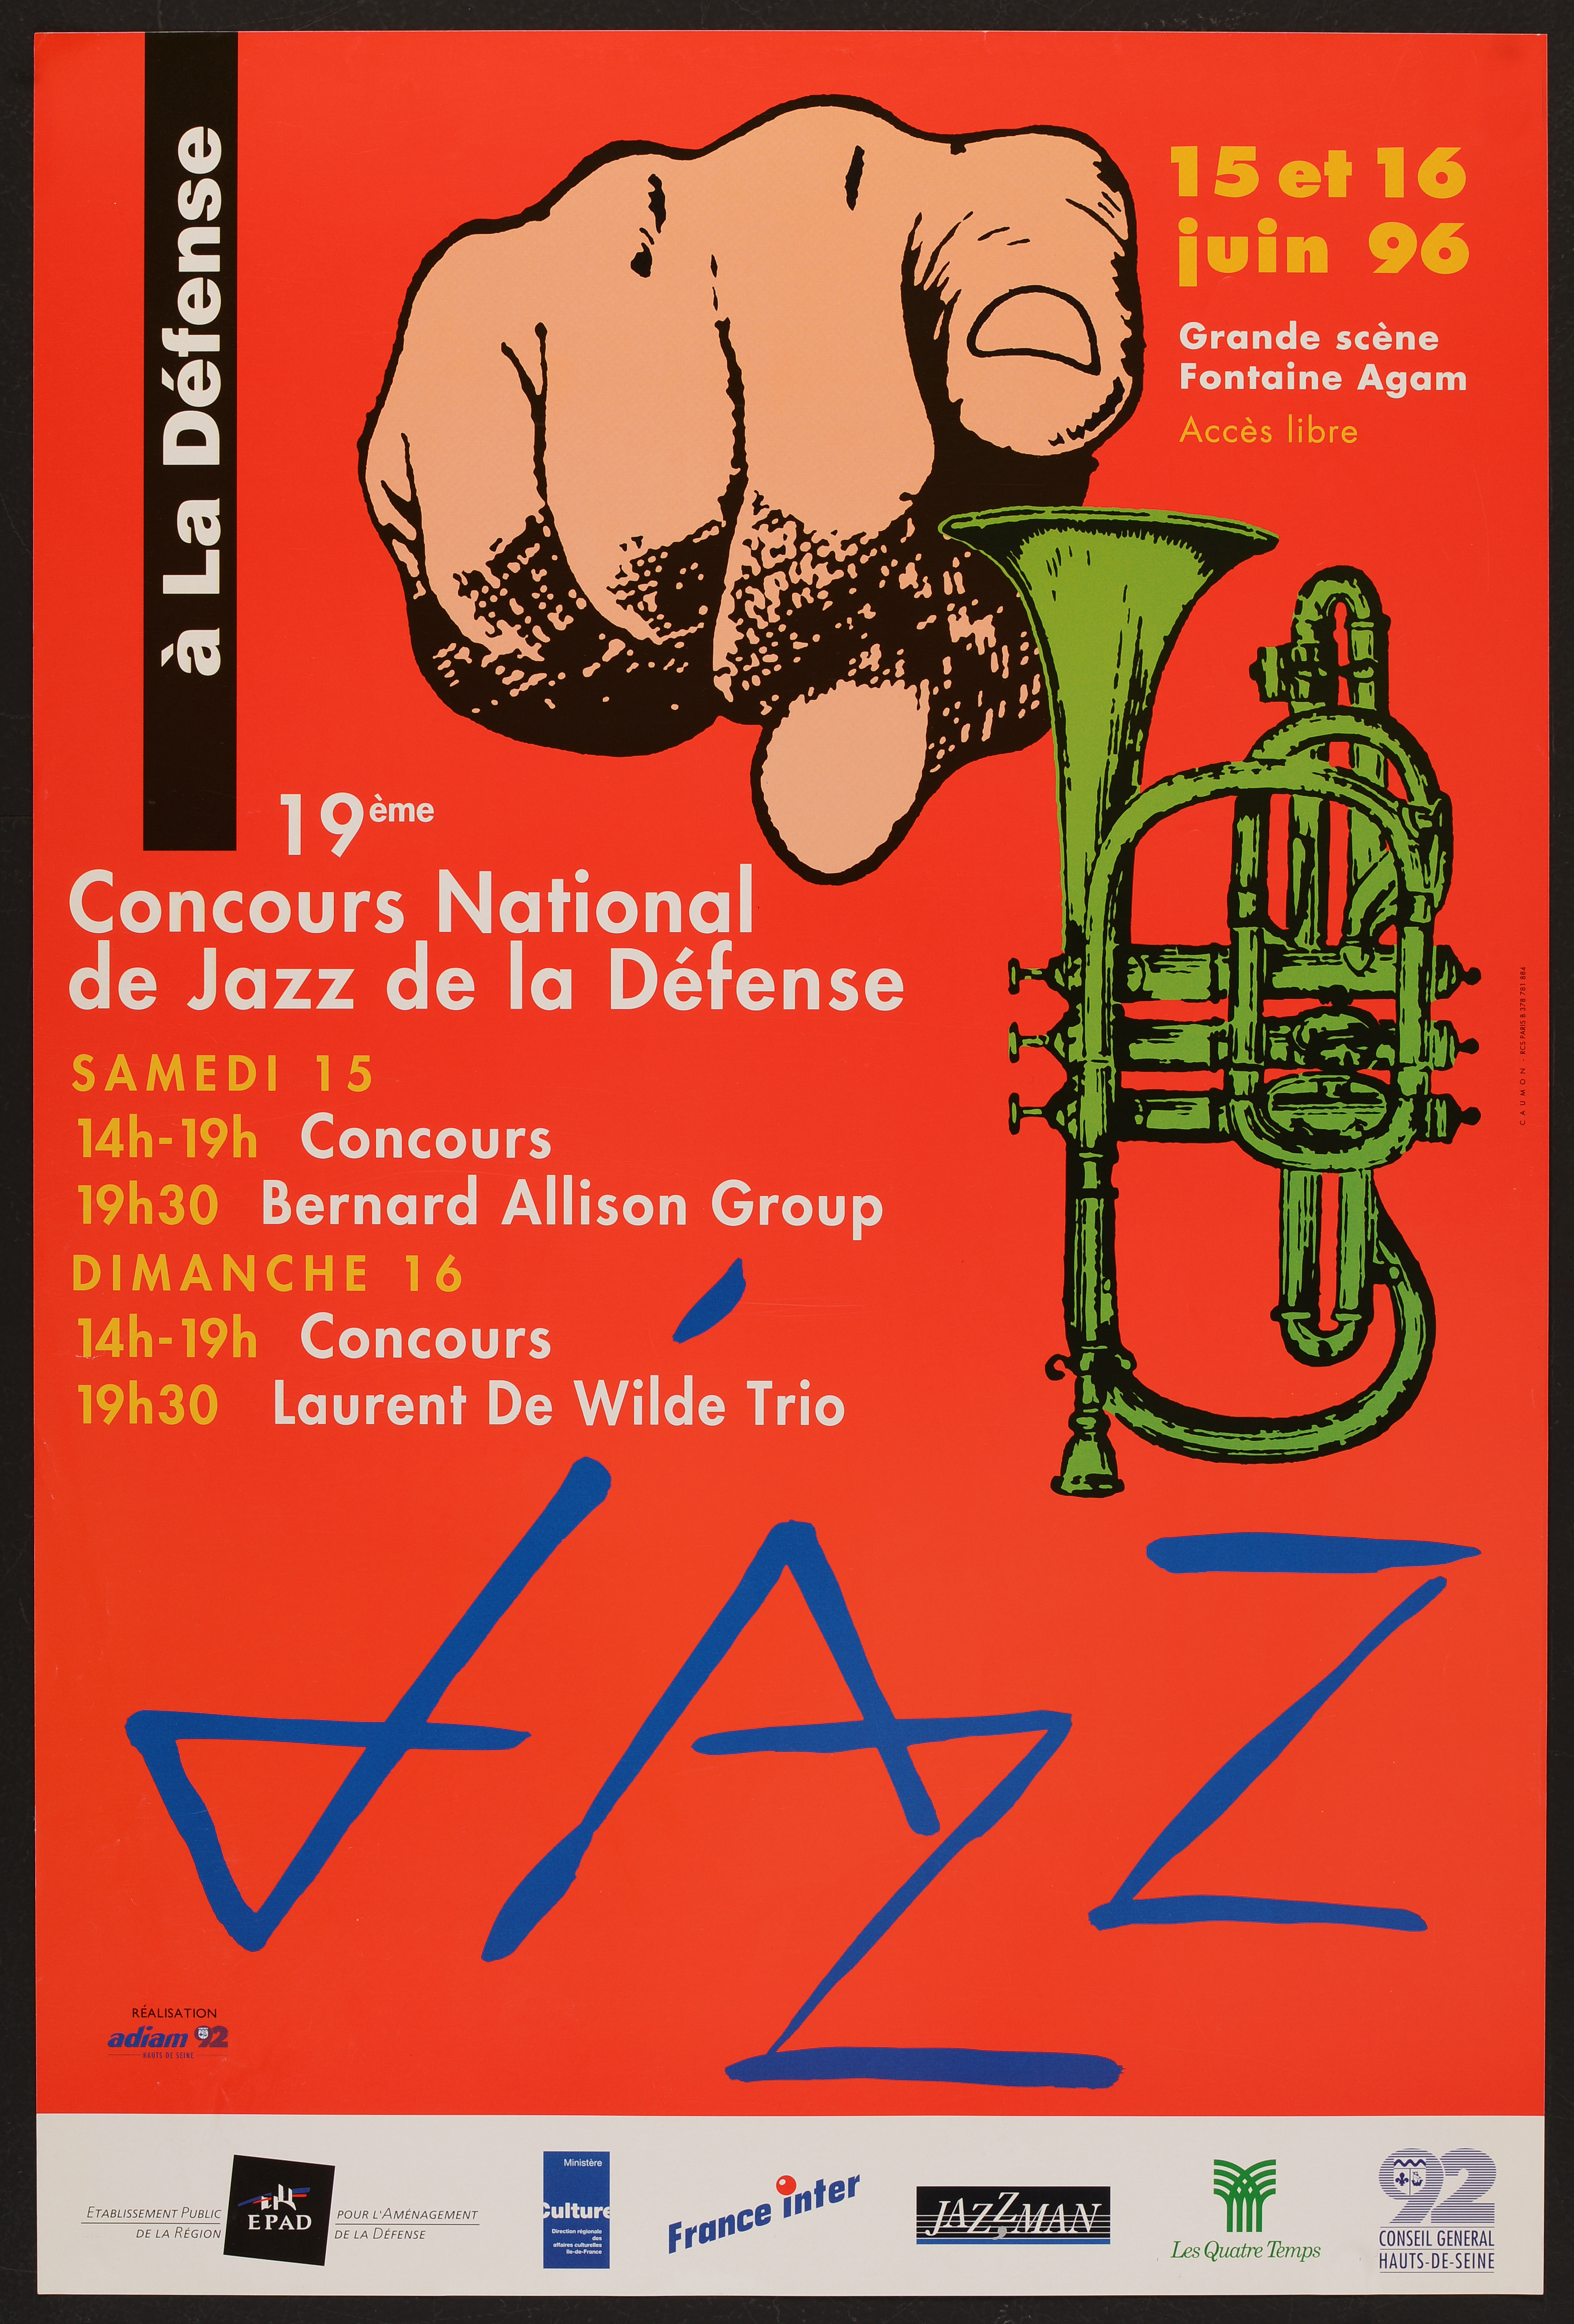 19ème Concours national de Jazz à la Défense. 15 et 16 juin 1996. - Affiche ill. coul. ; 60 x 40 cm.